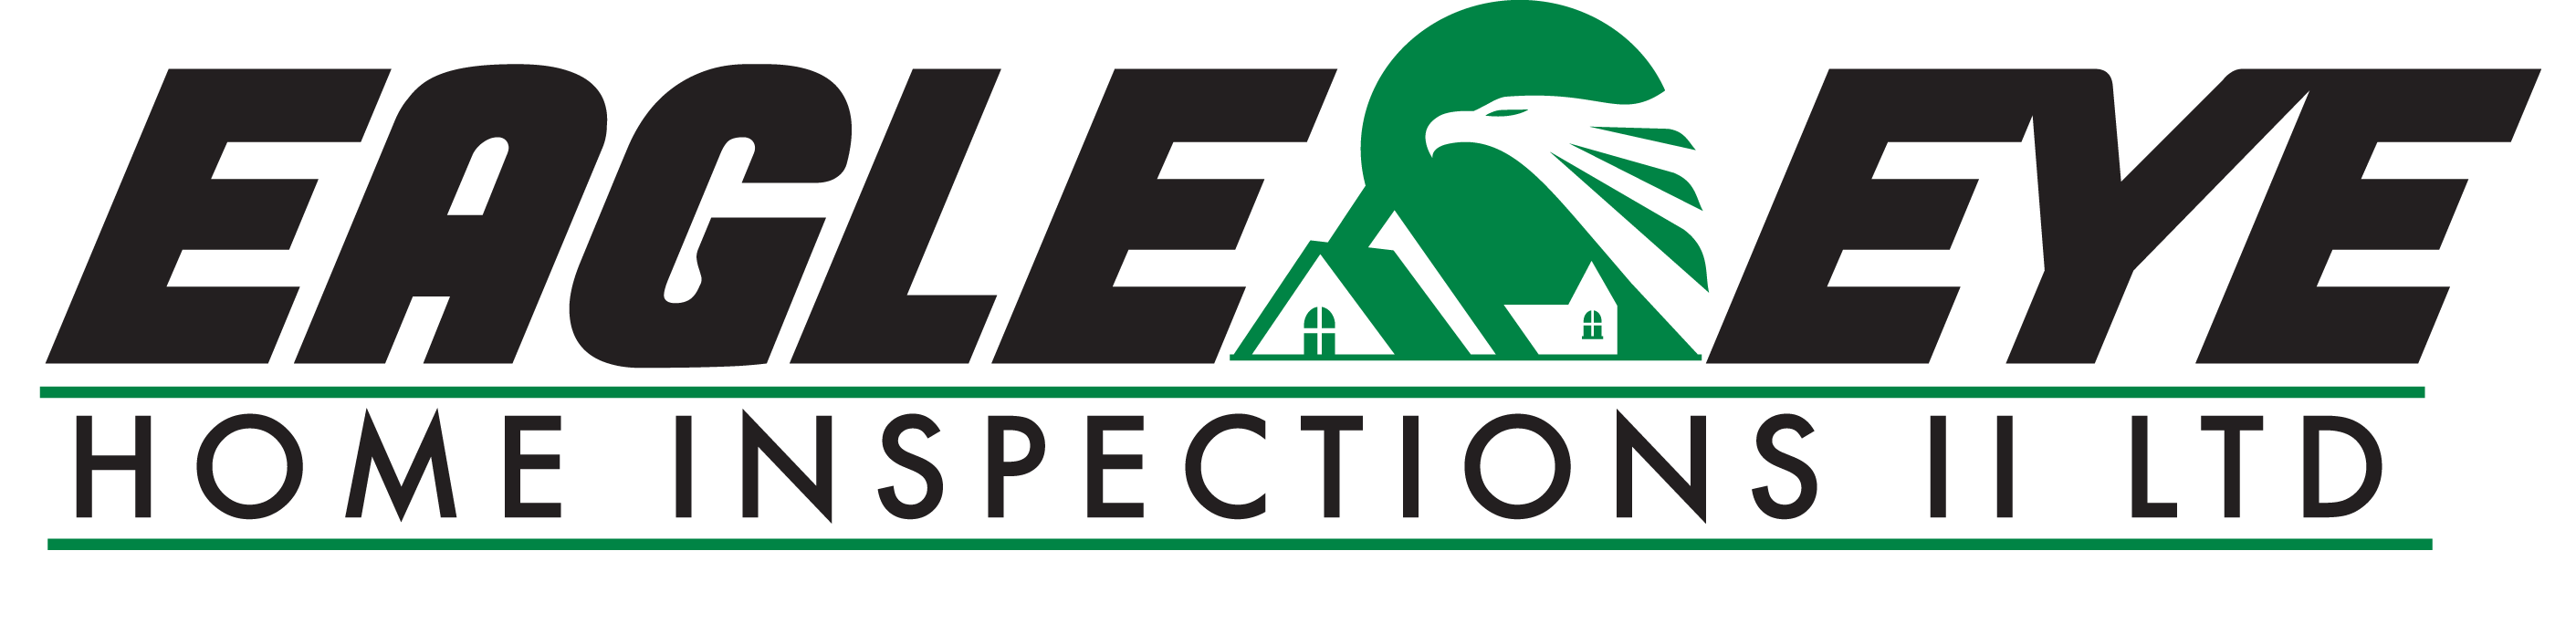 eagle eye home inspection